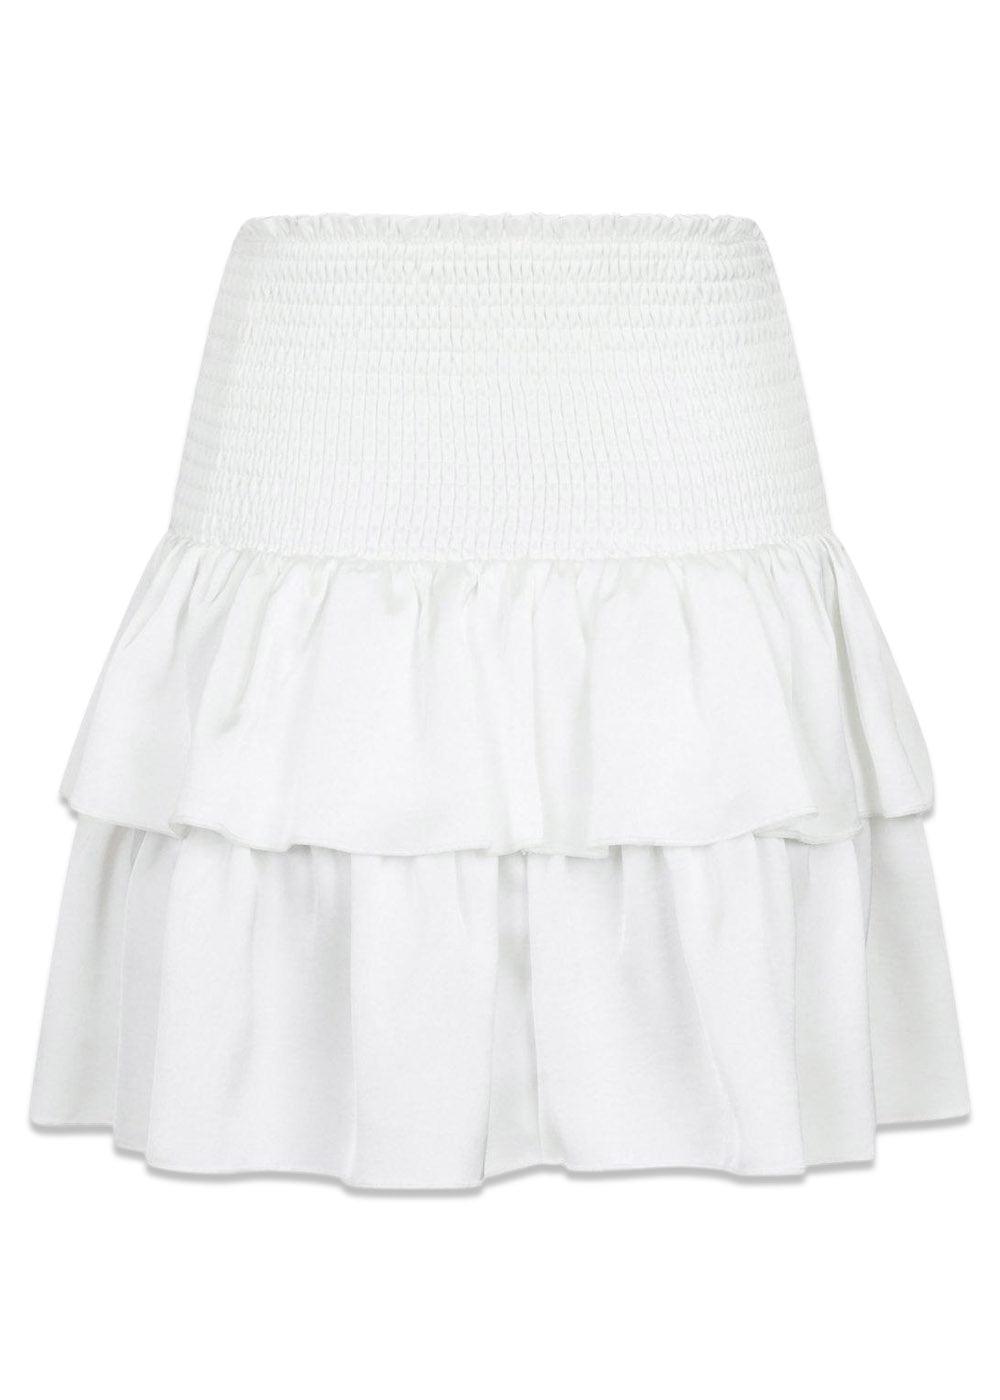 Carin Heavy Sateen Skirt - White